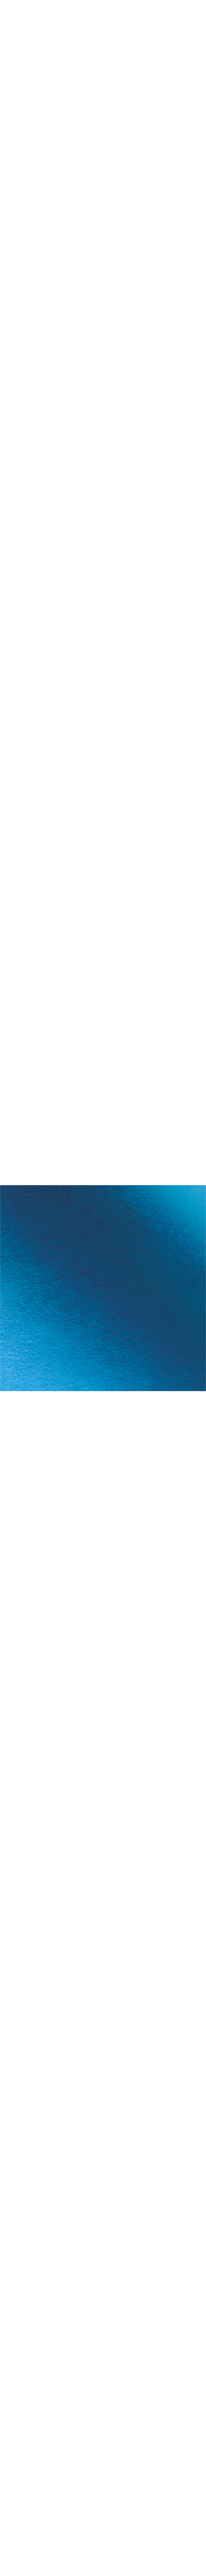 MT0013 SISER METAL BLUE en 0.50m